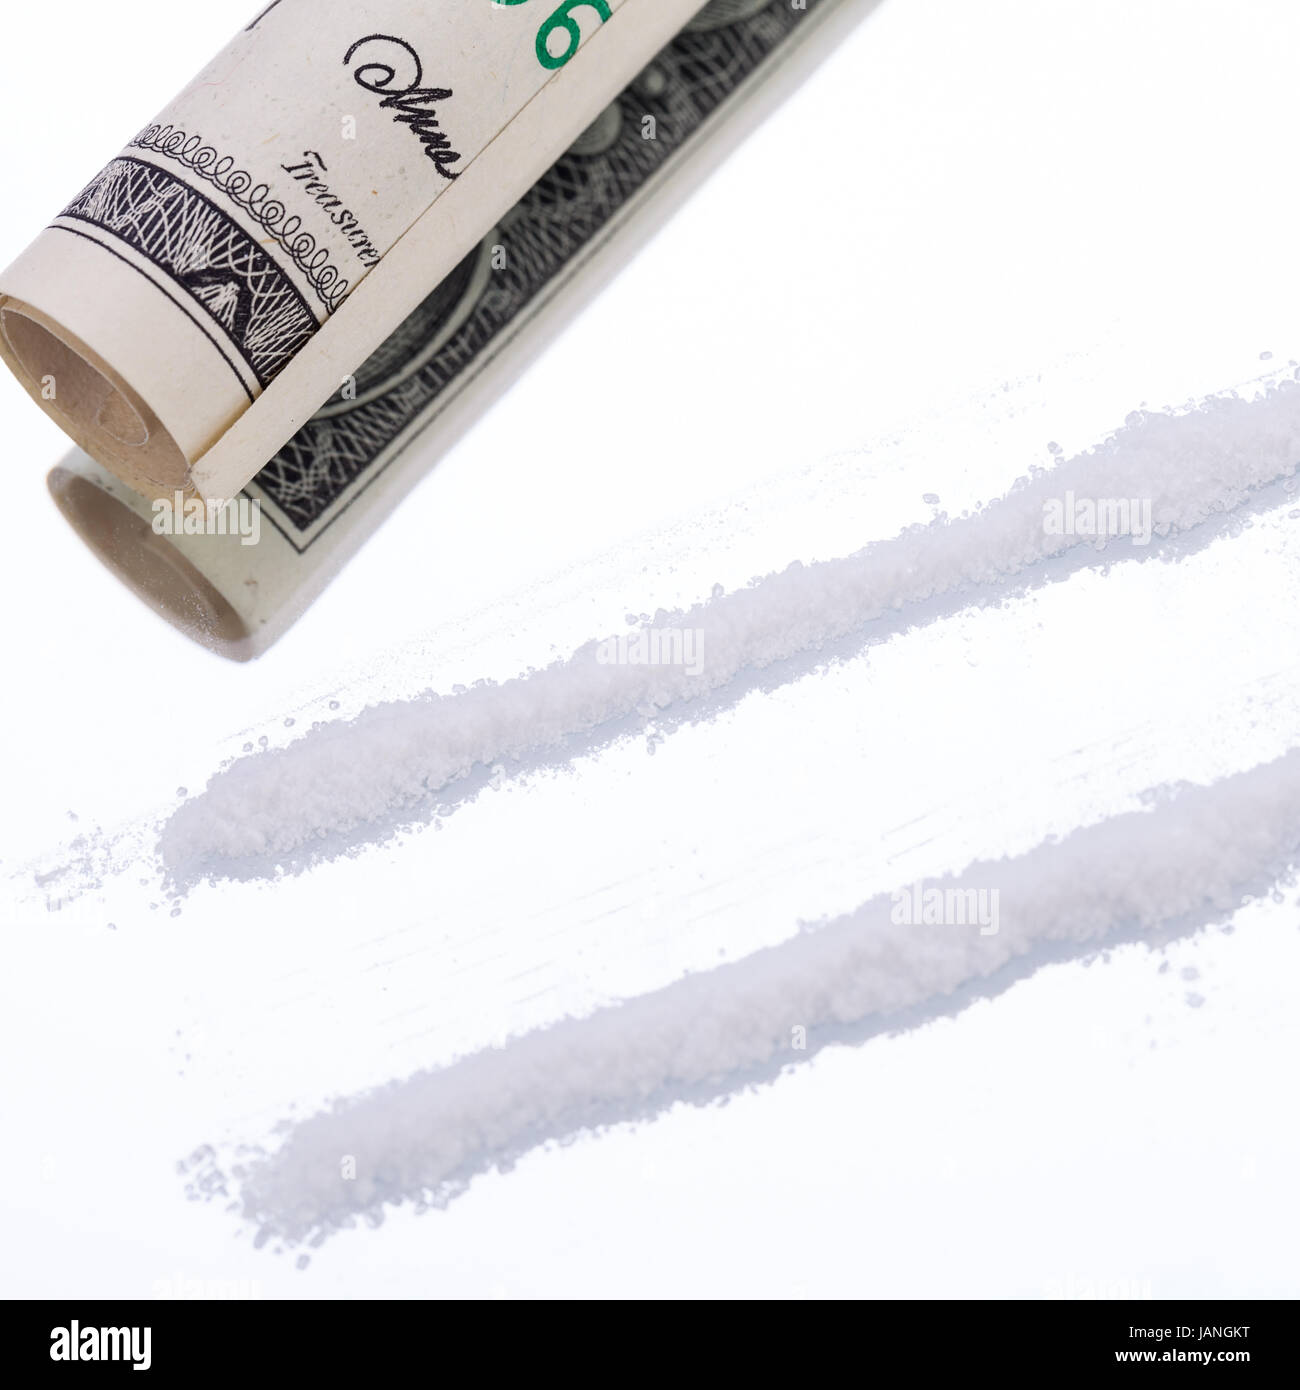 drogen mit geldschein und rasierklinge auf spiegel kokain illegal sucht abhängig Stock Photo